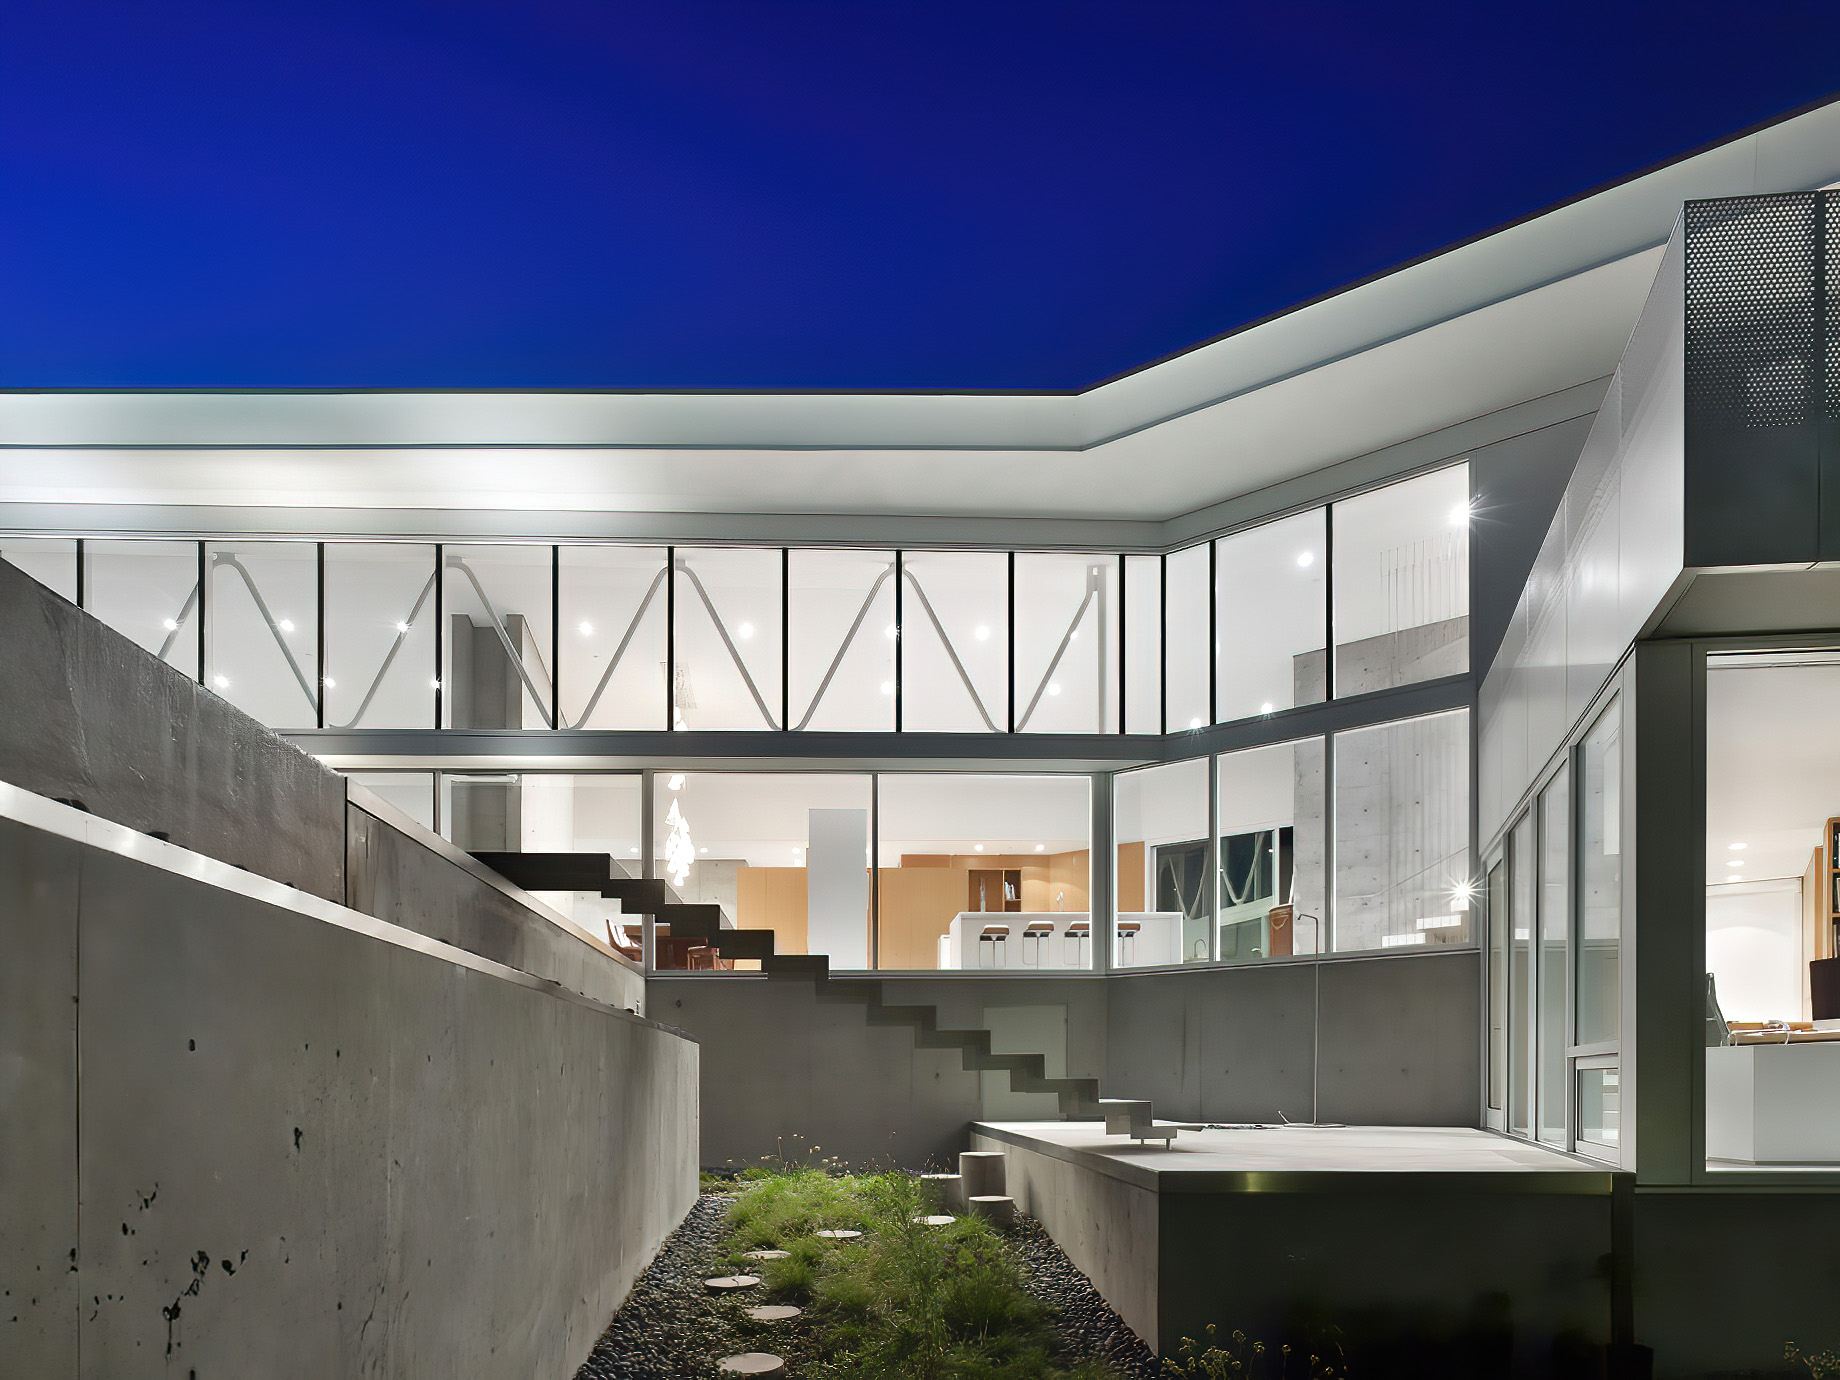 Concrete Glass Dream Home – Fairmile Rd, West Vancouver, BC, Canada